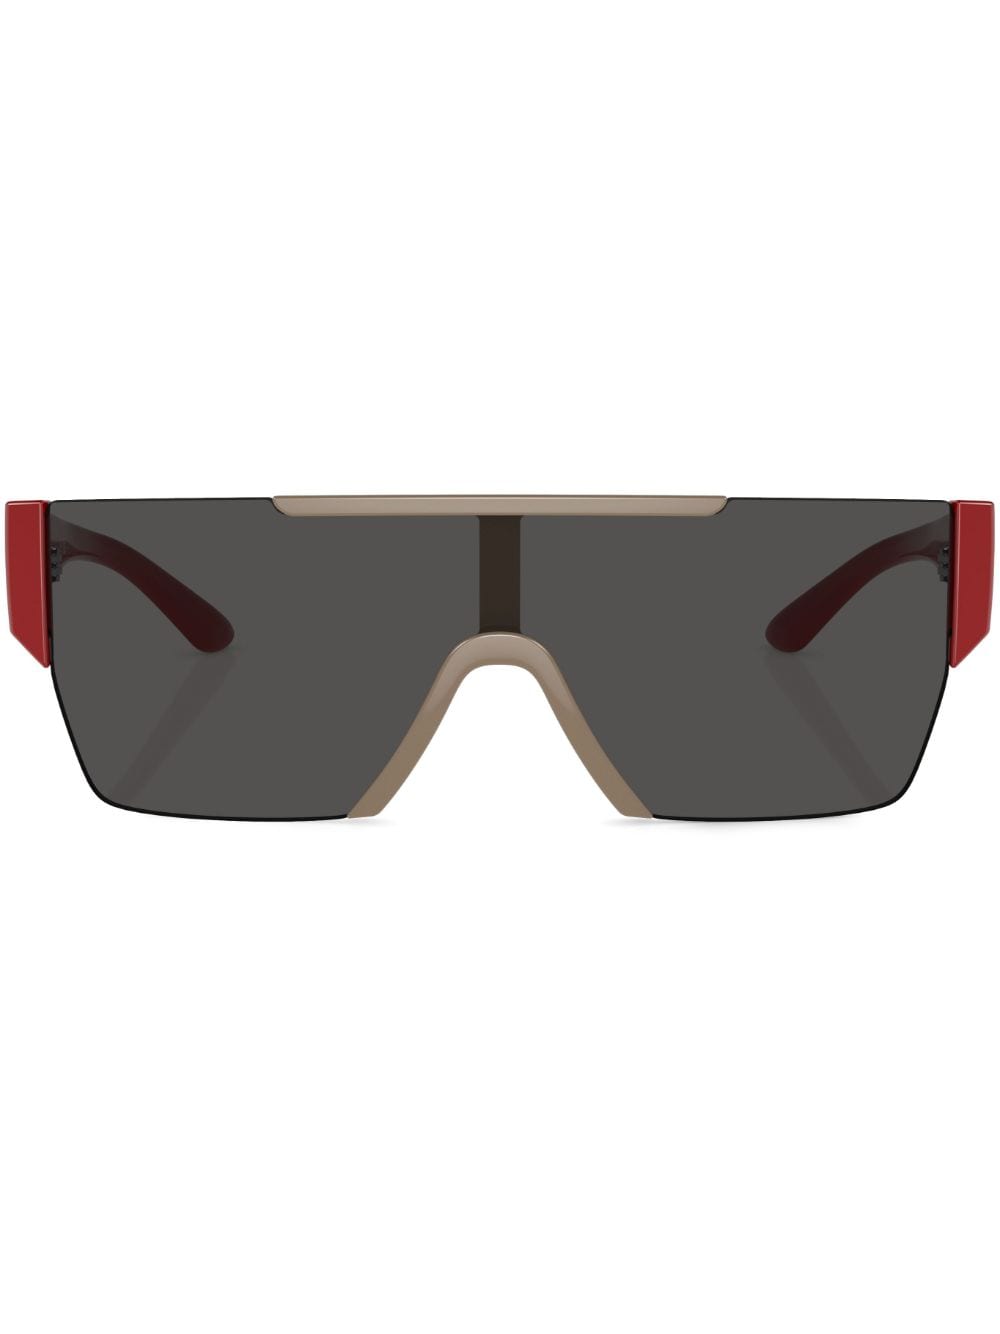 tinted-lenses mask-frame sunglasses